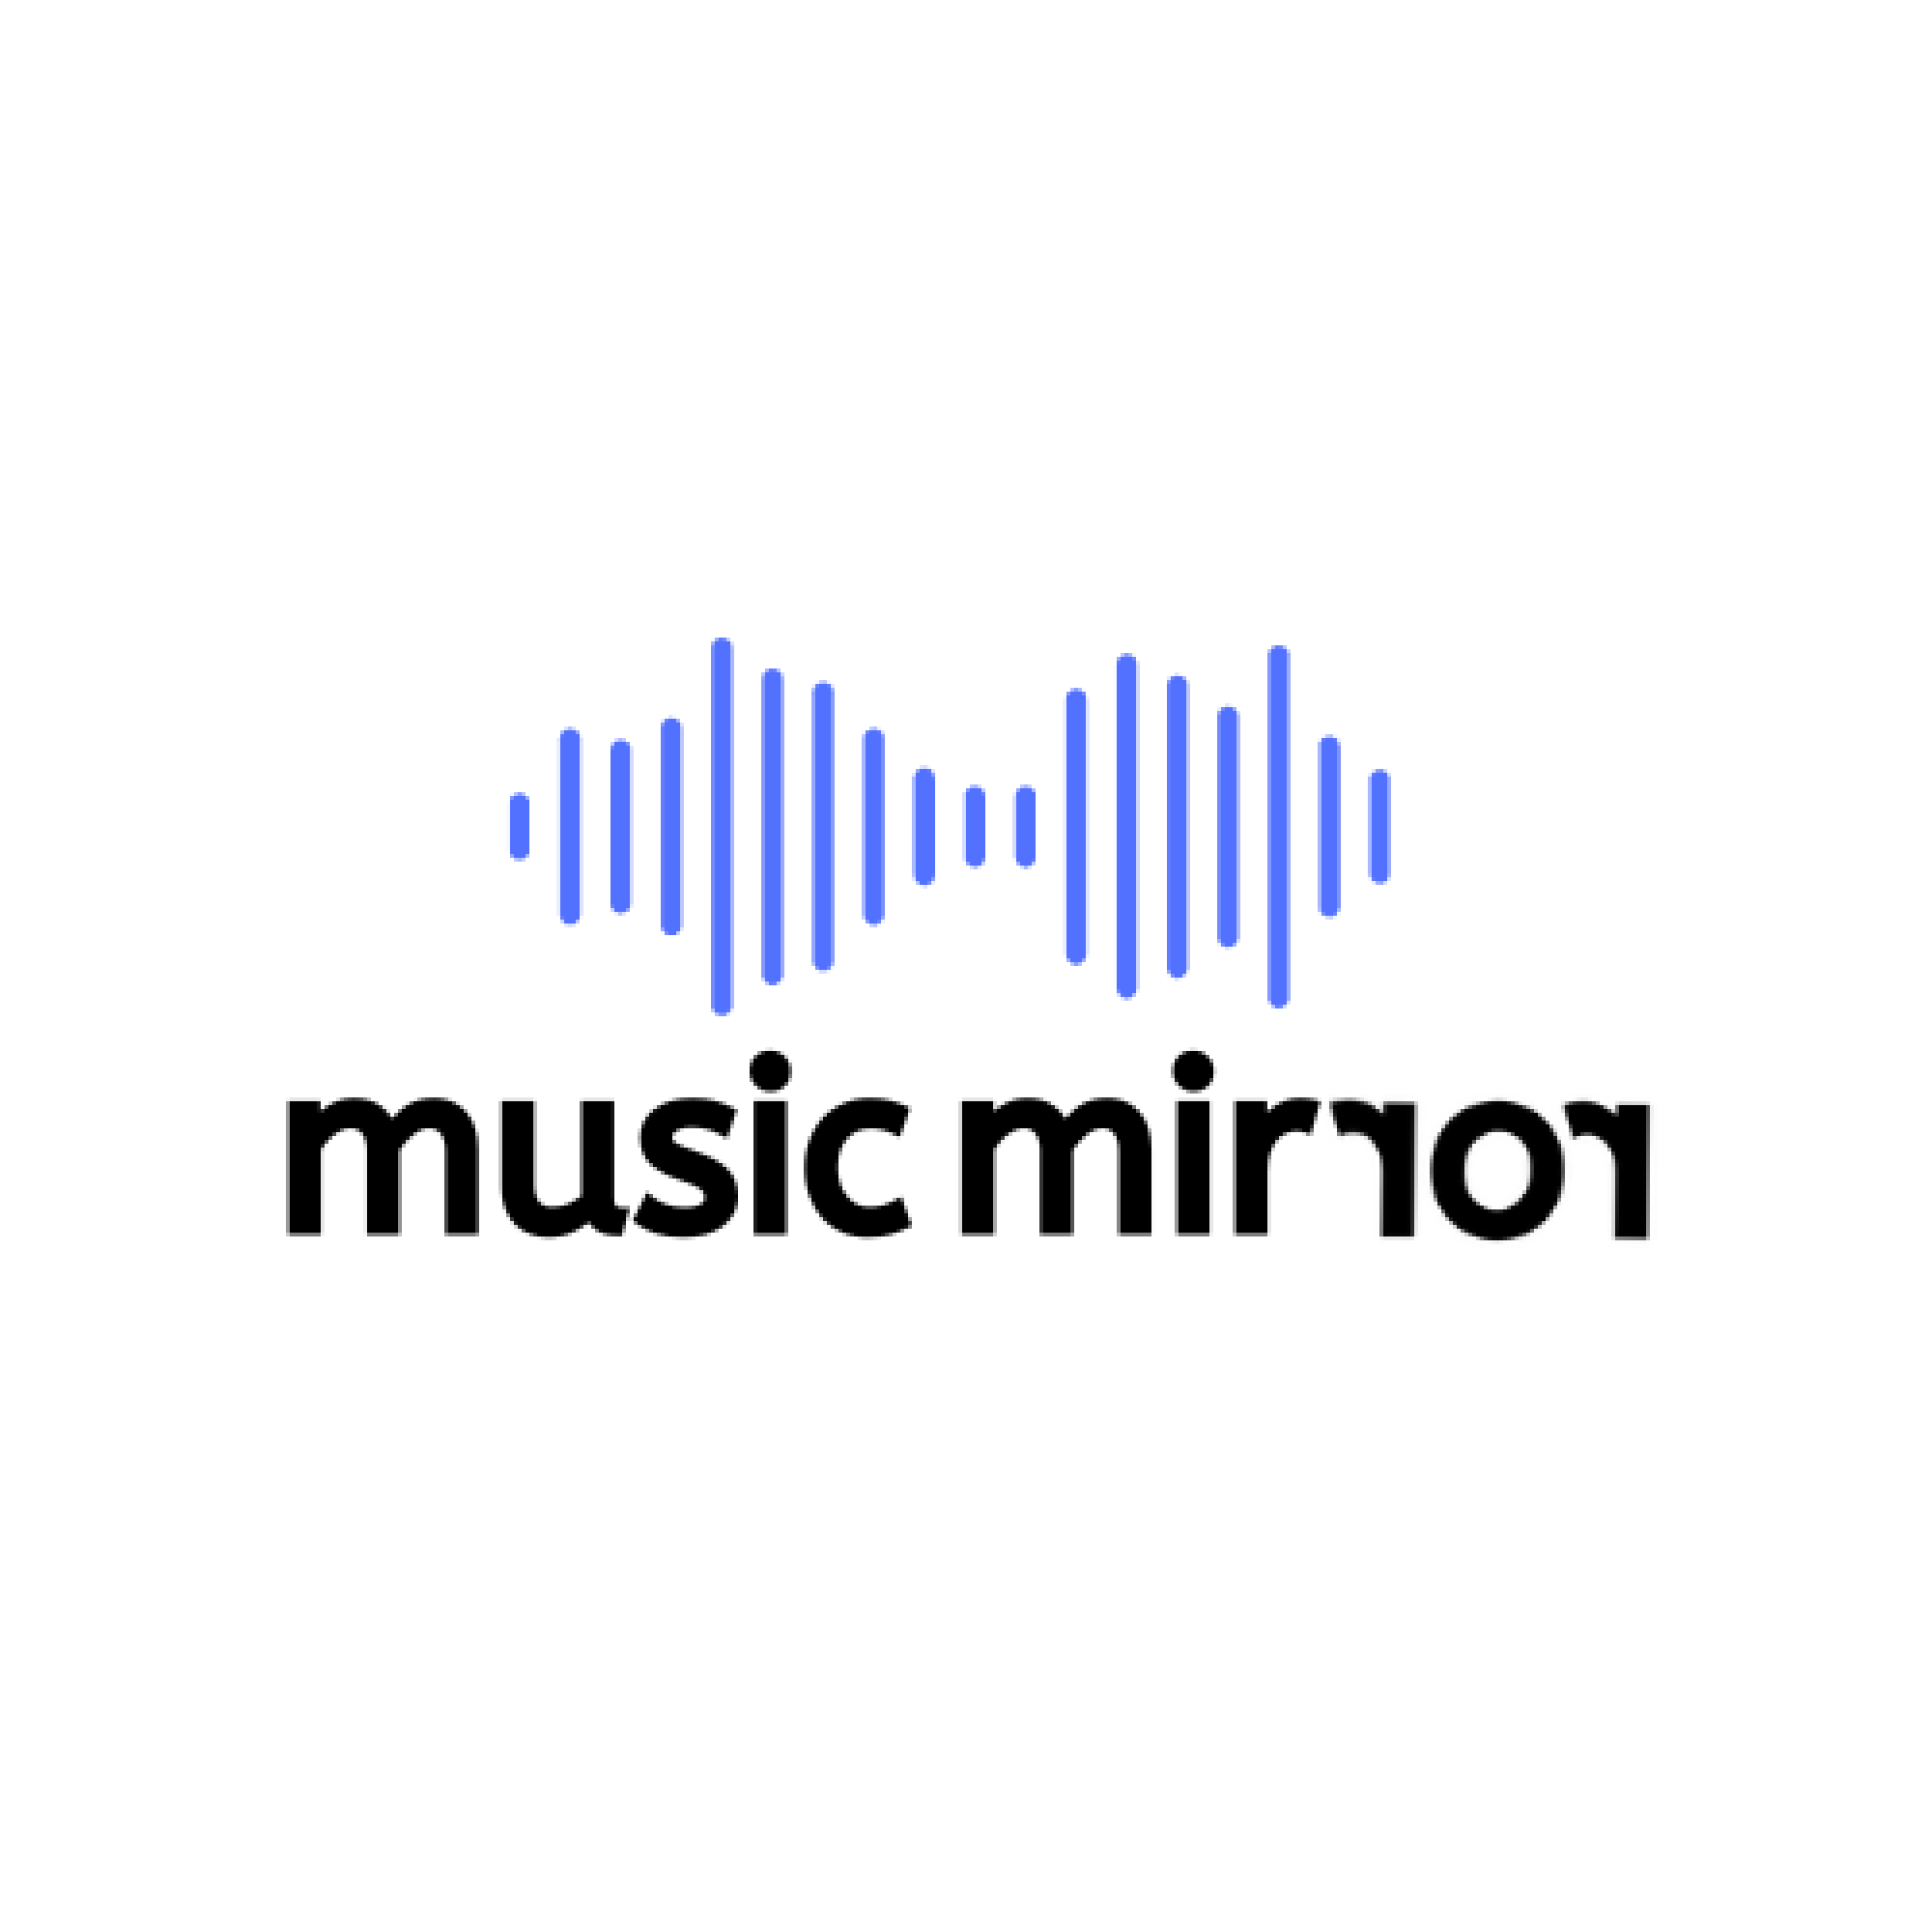 Team B3: Music Mirror